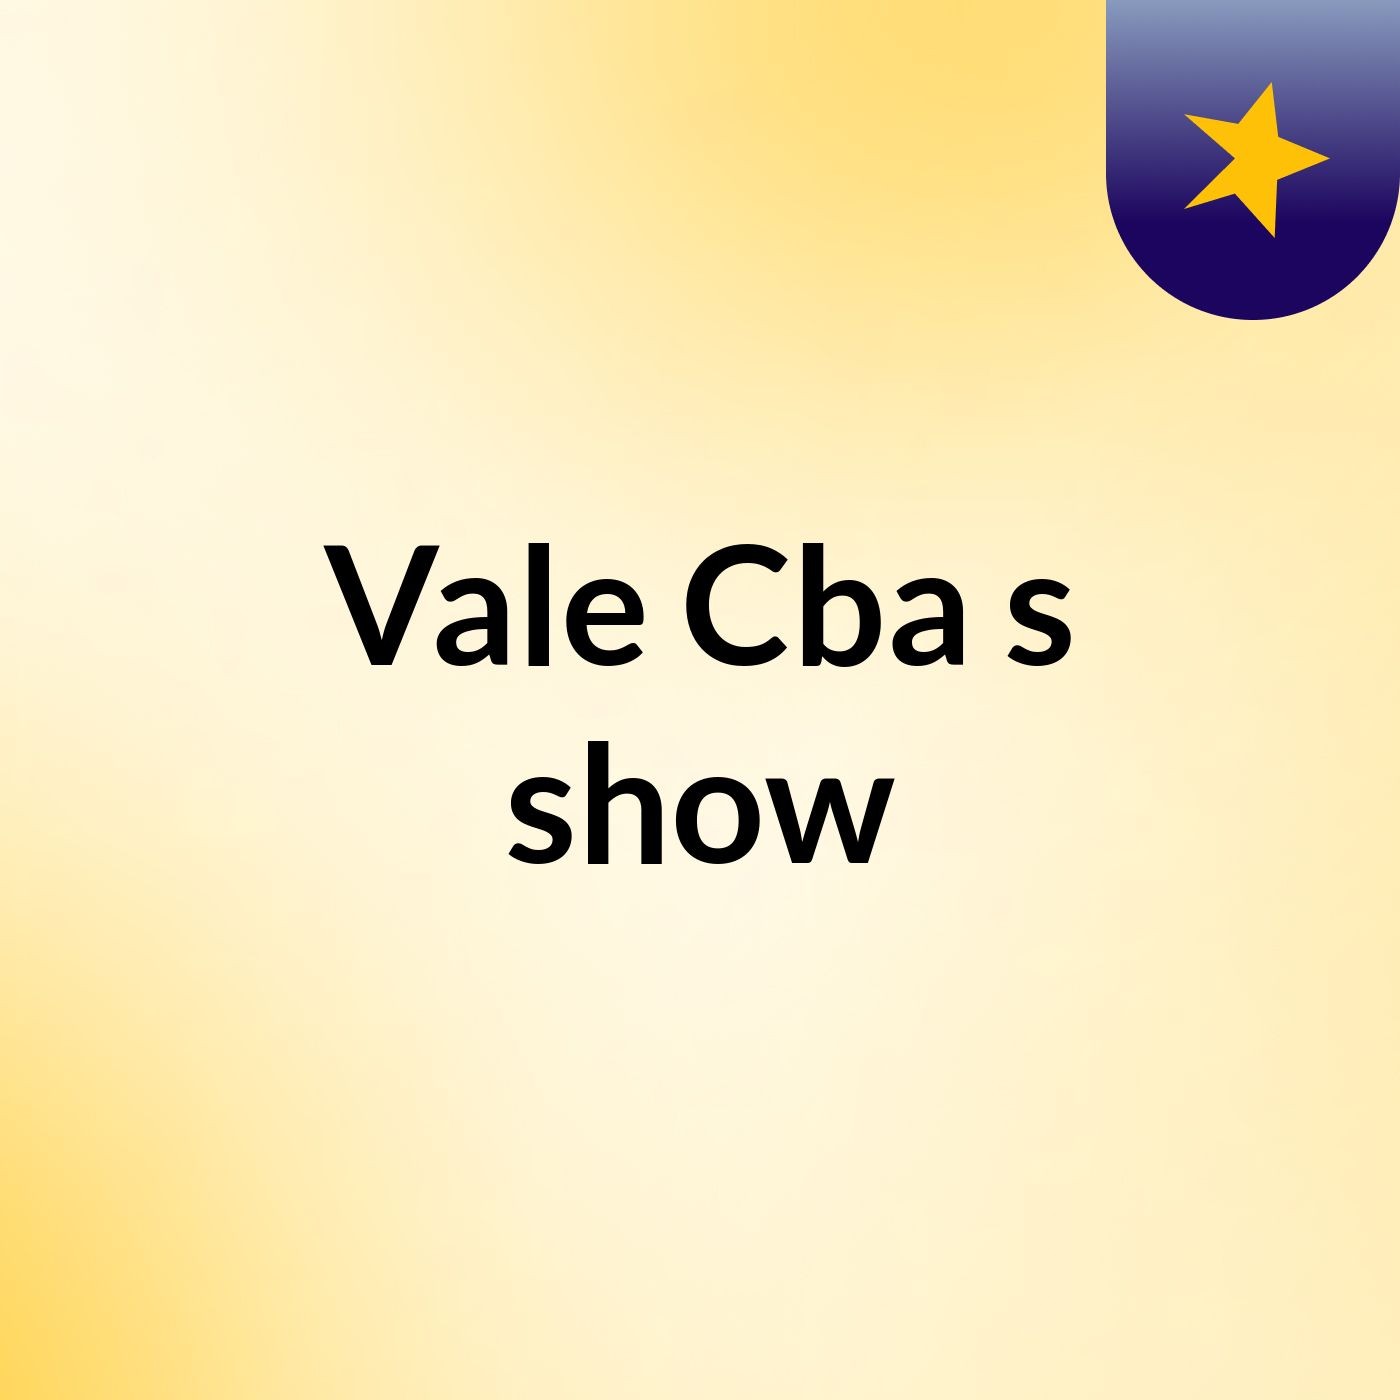 Vale Cba's show